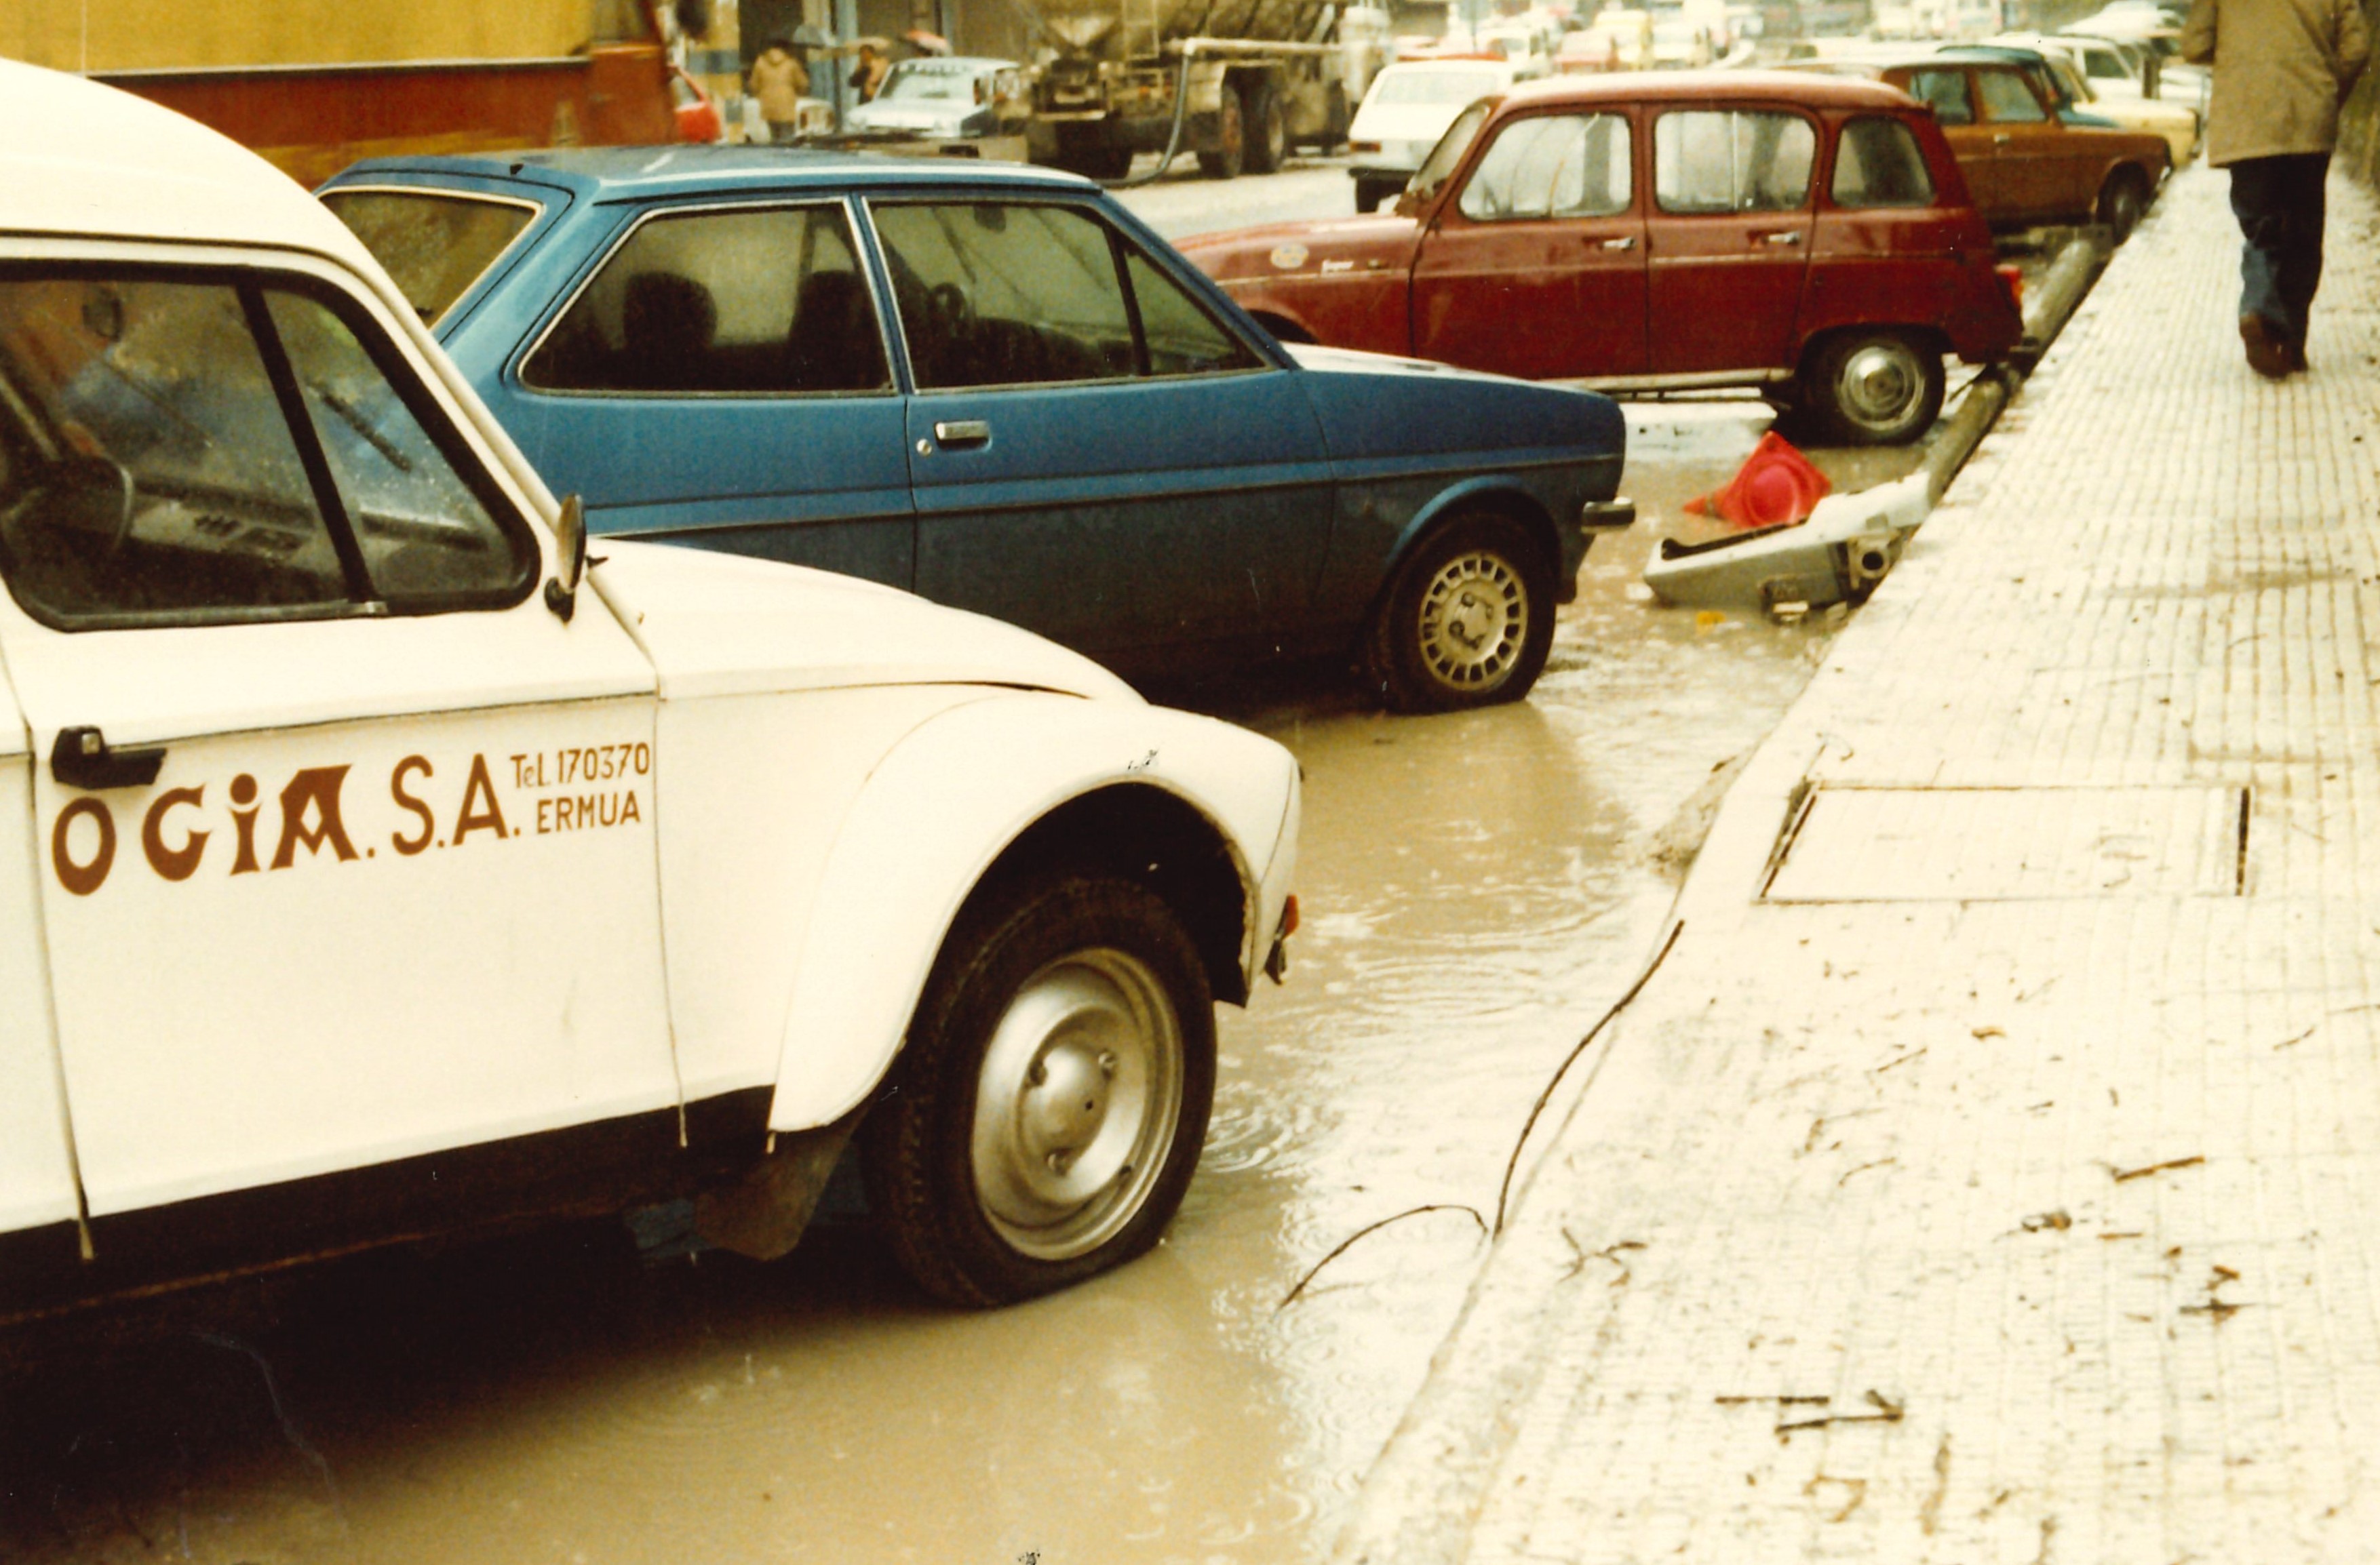 Inundaciones en Ermua año 1983. Uholdeak Ermuan 1983.urtean.